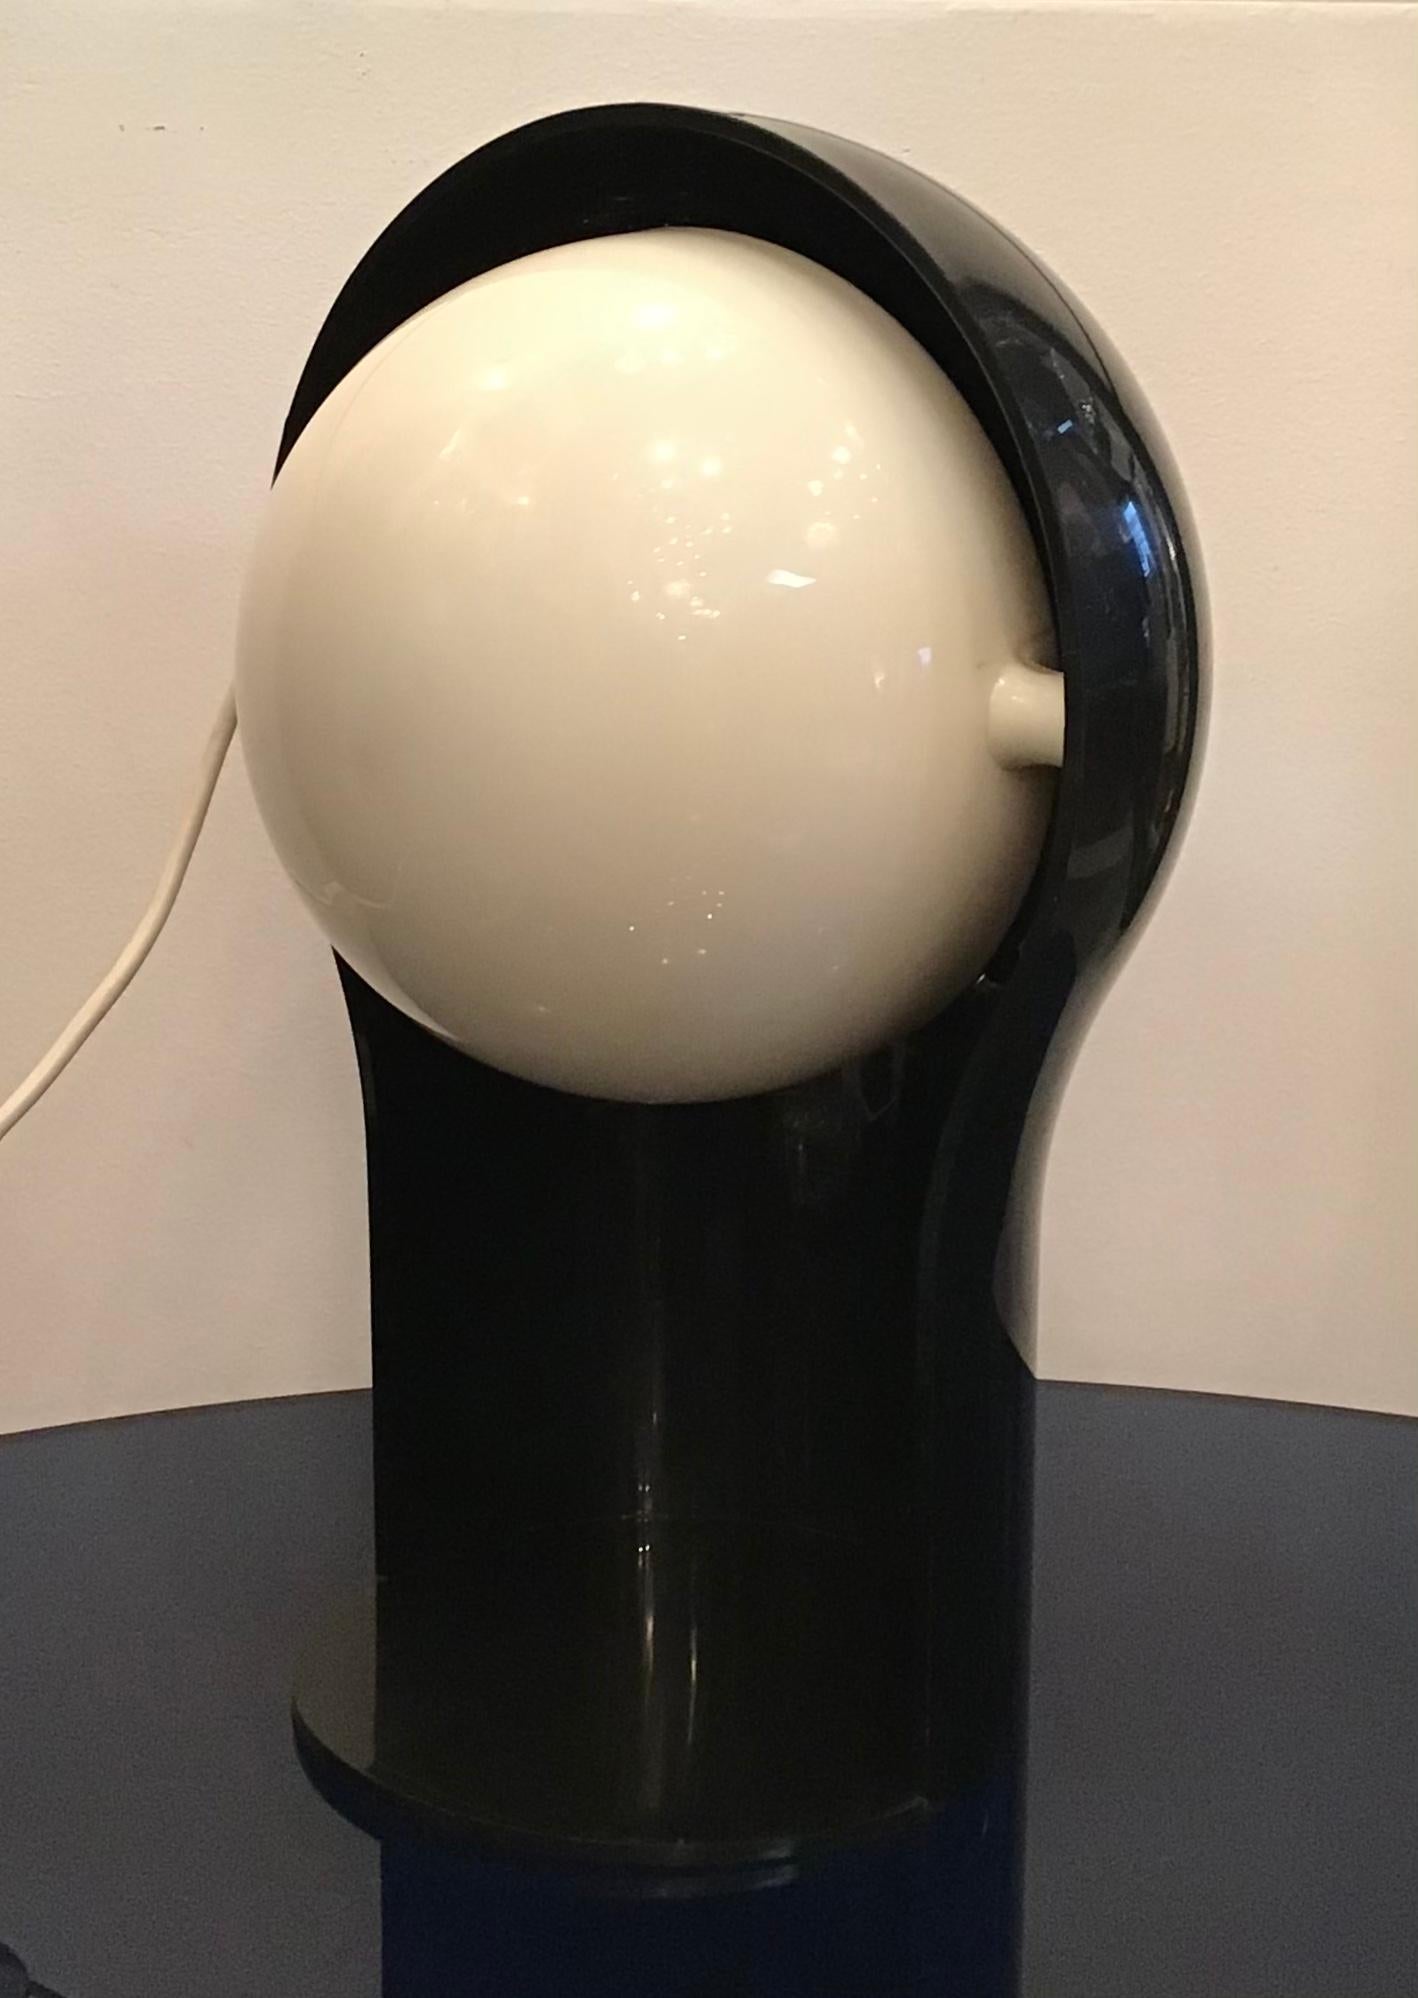 Vico Magistretti “Telegono” Table Lamp 1966 Perplex, Italy For Sale 3